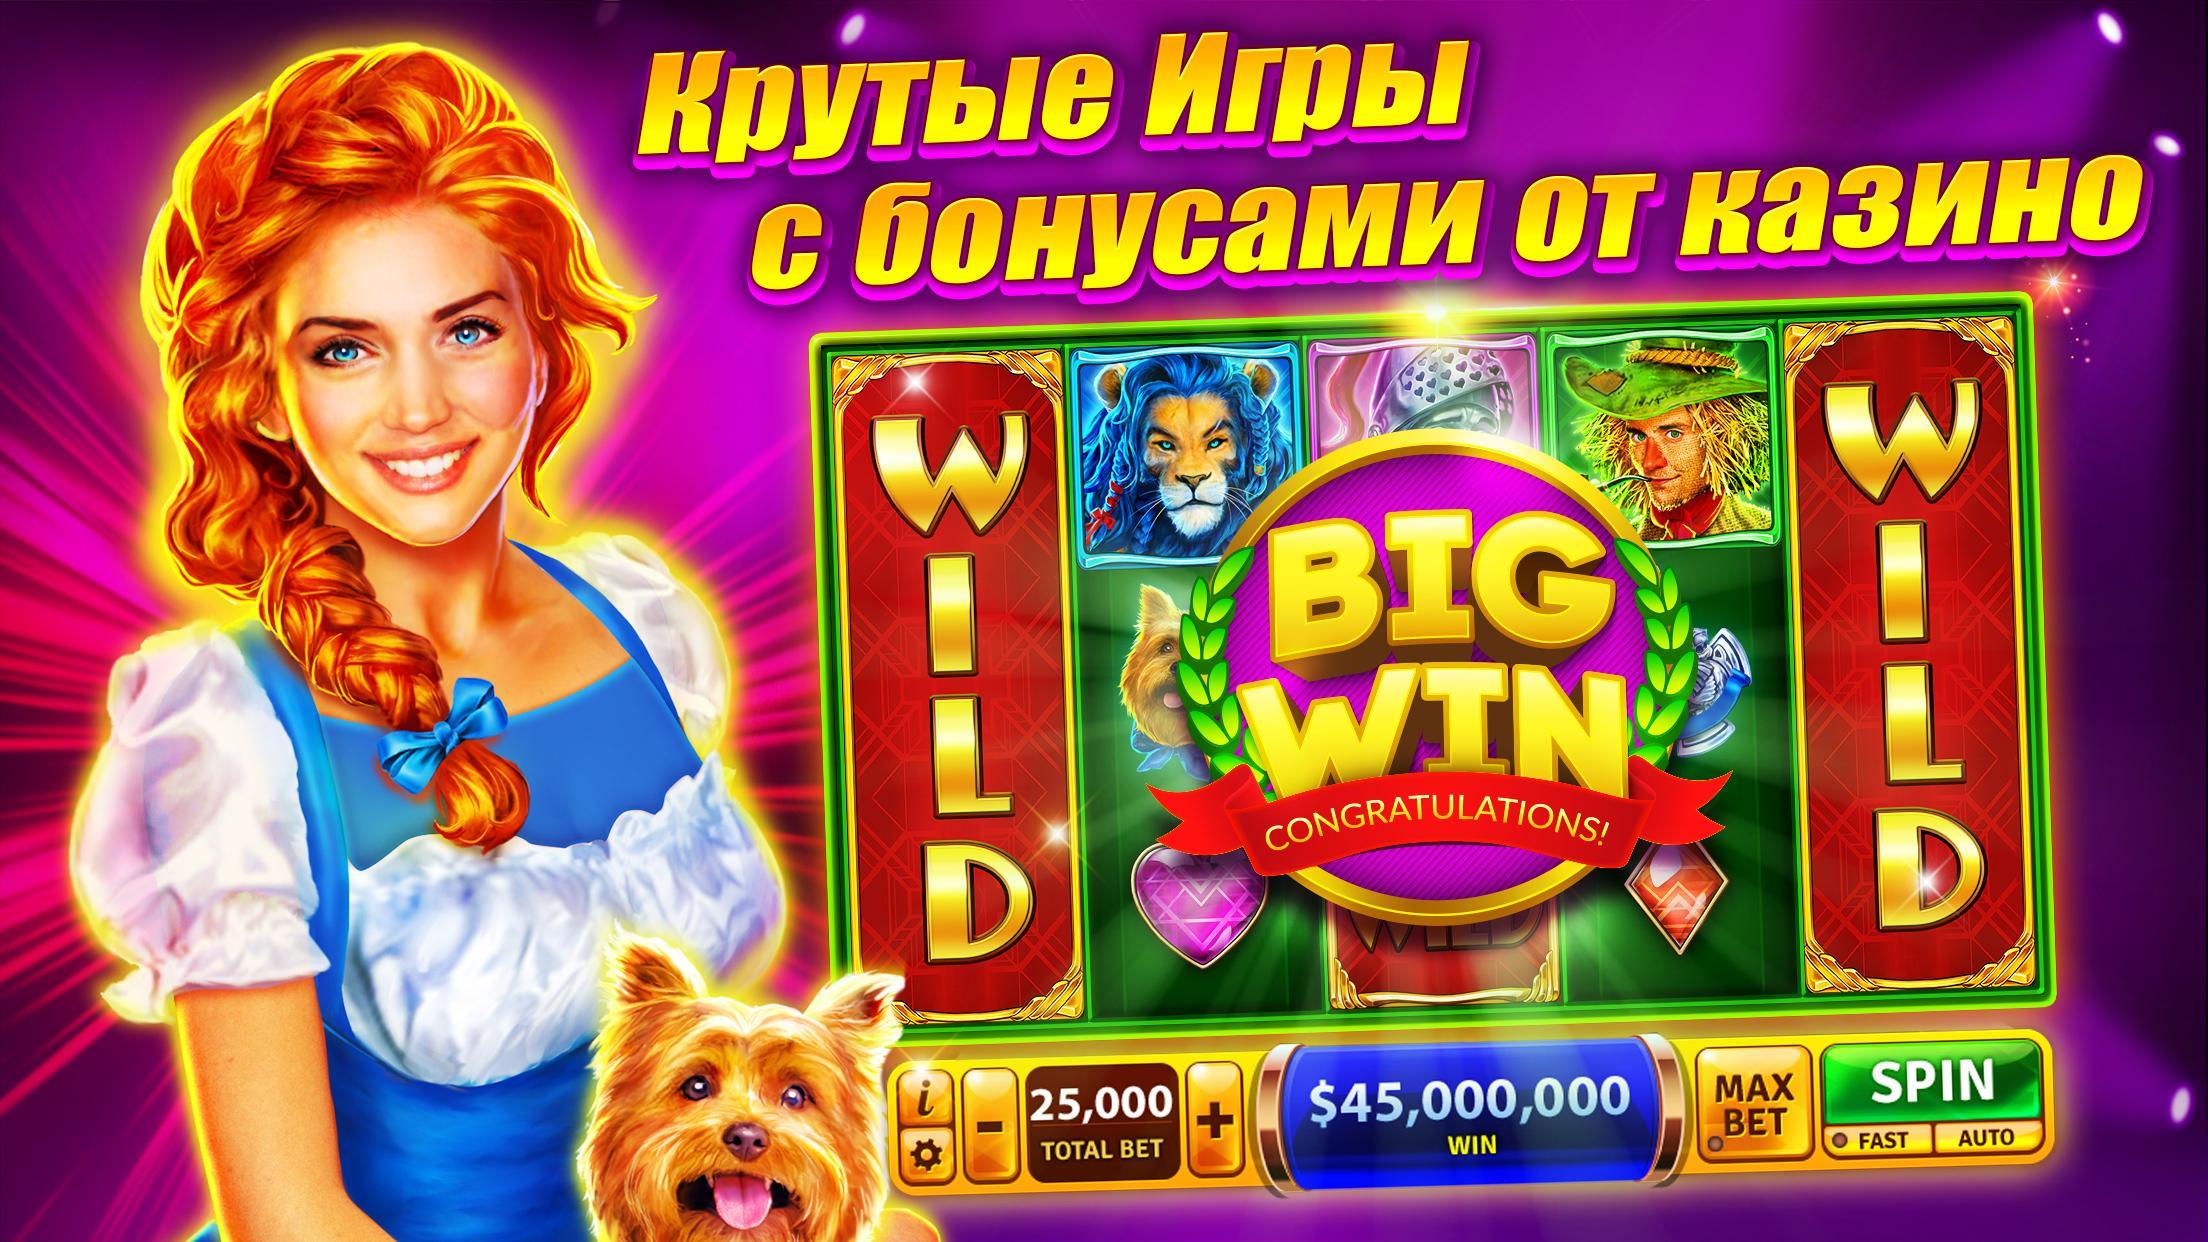 Онлайн казино в казахстане